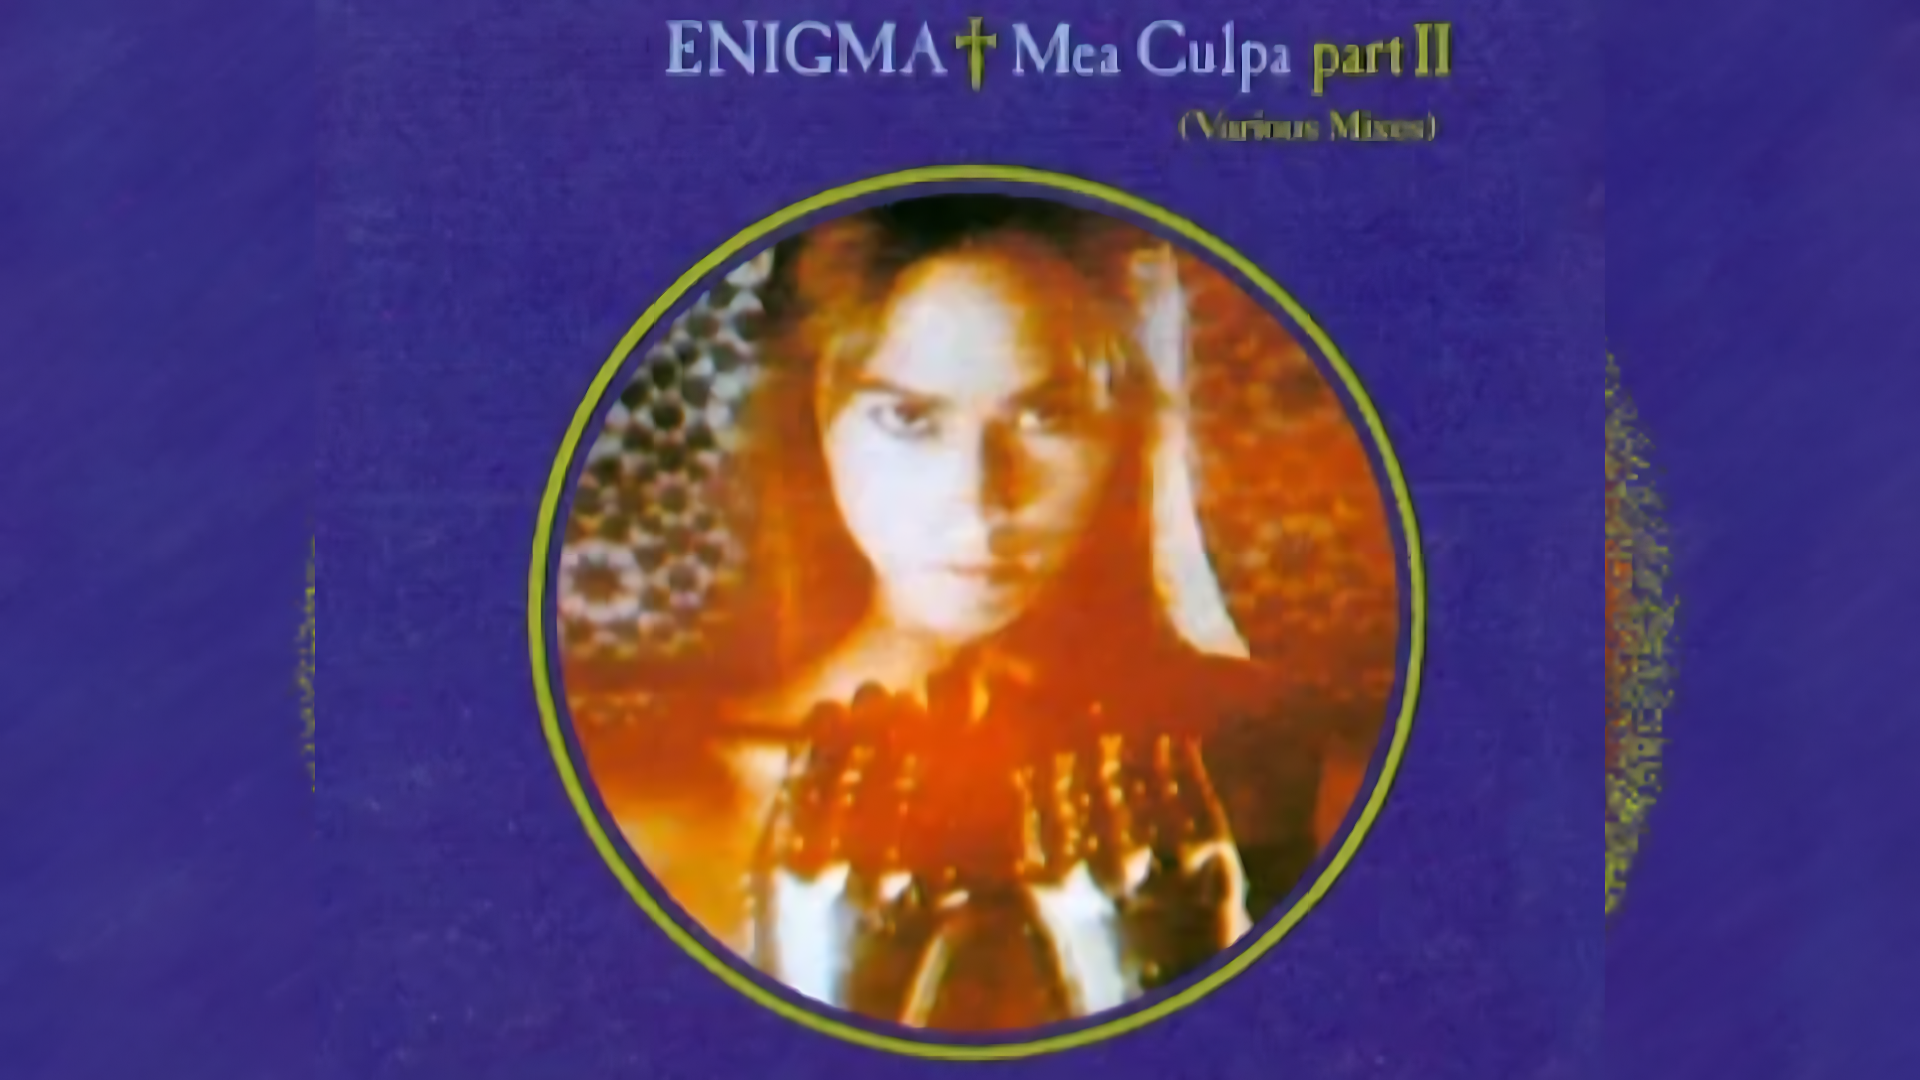 Enigma - Mea Culpa Part II (NG Remix) (Ultra HD 4K)